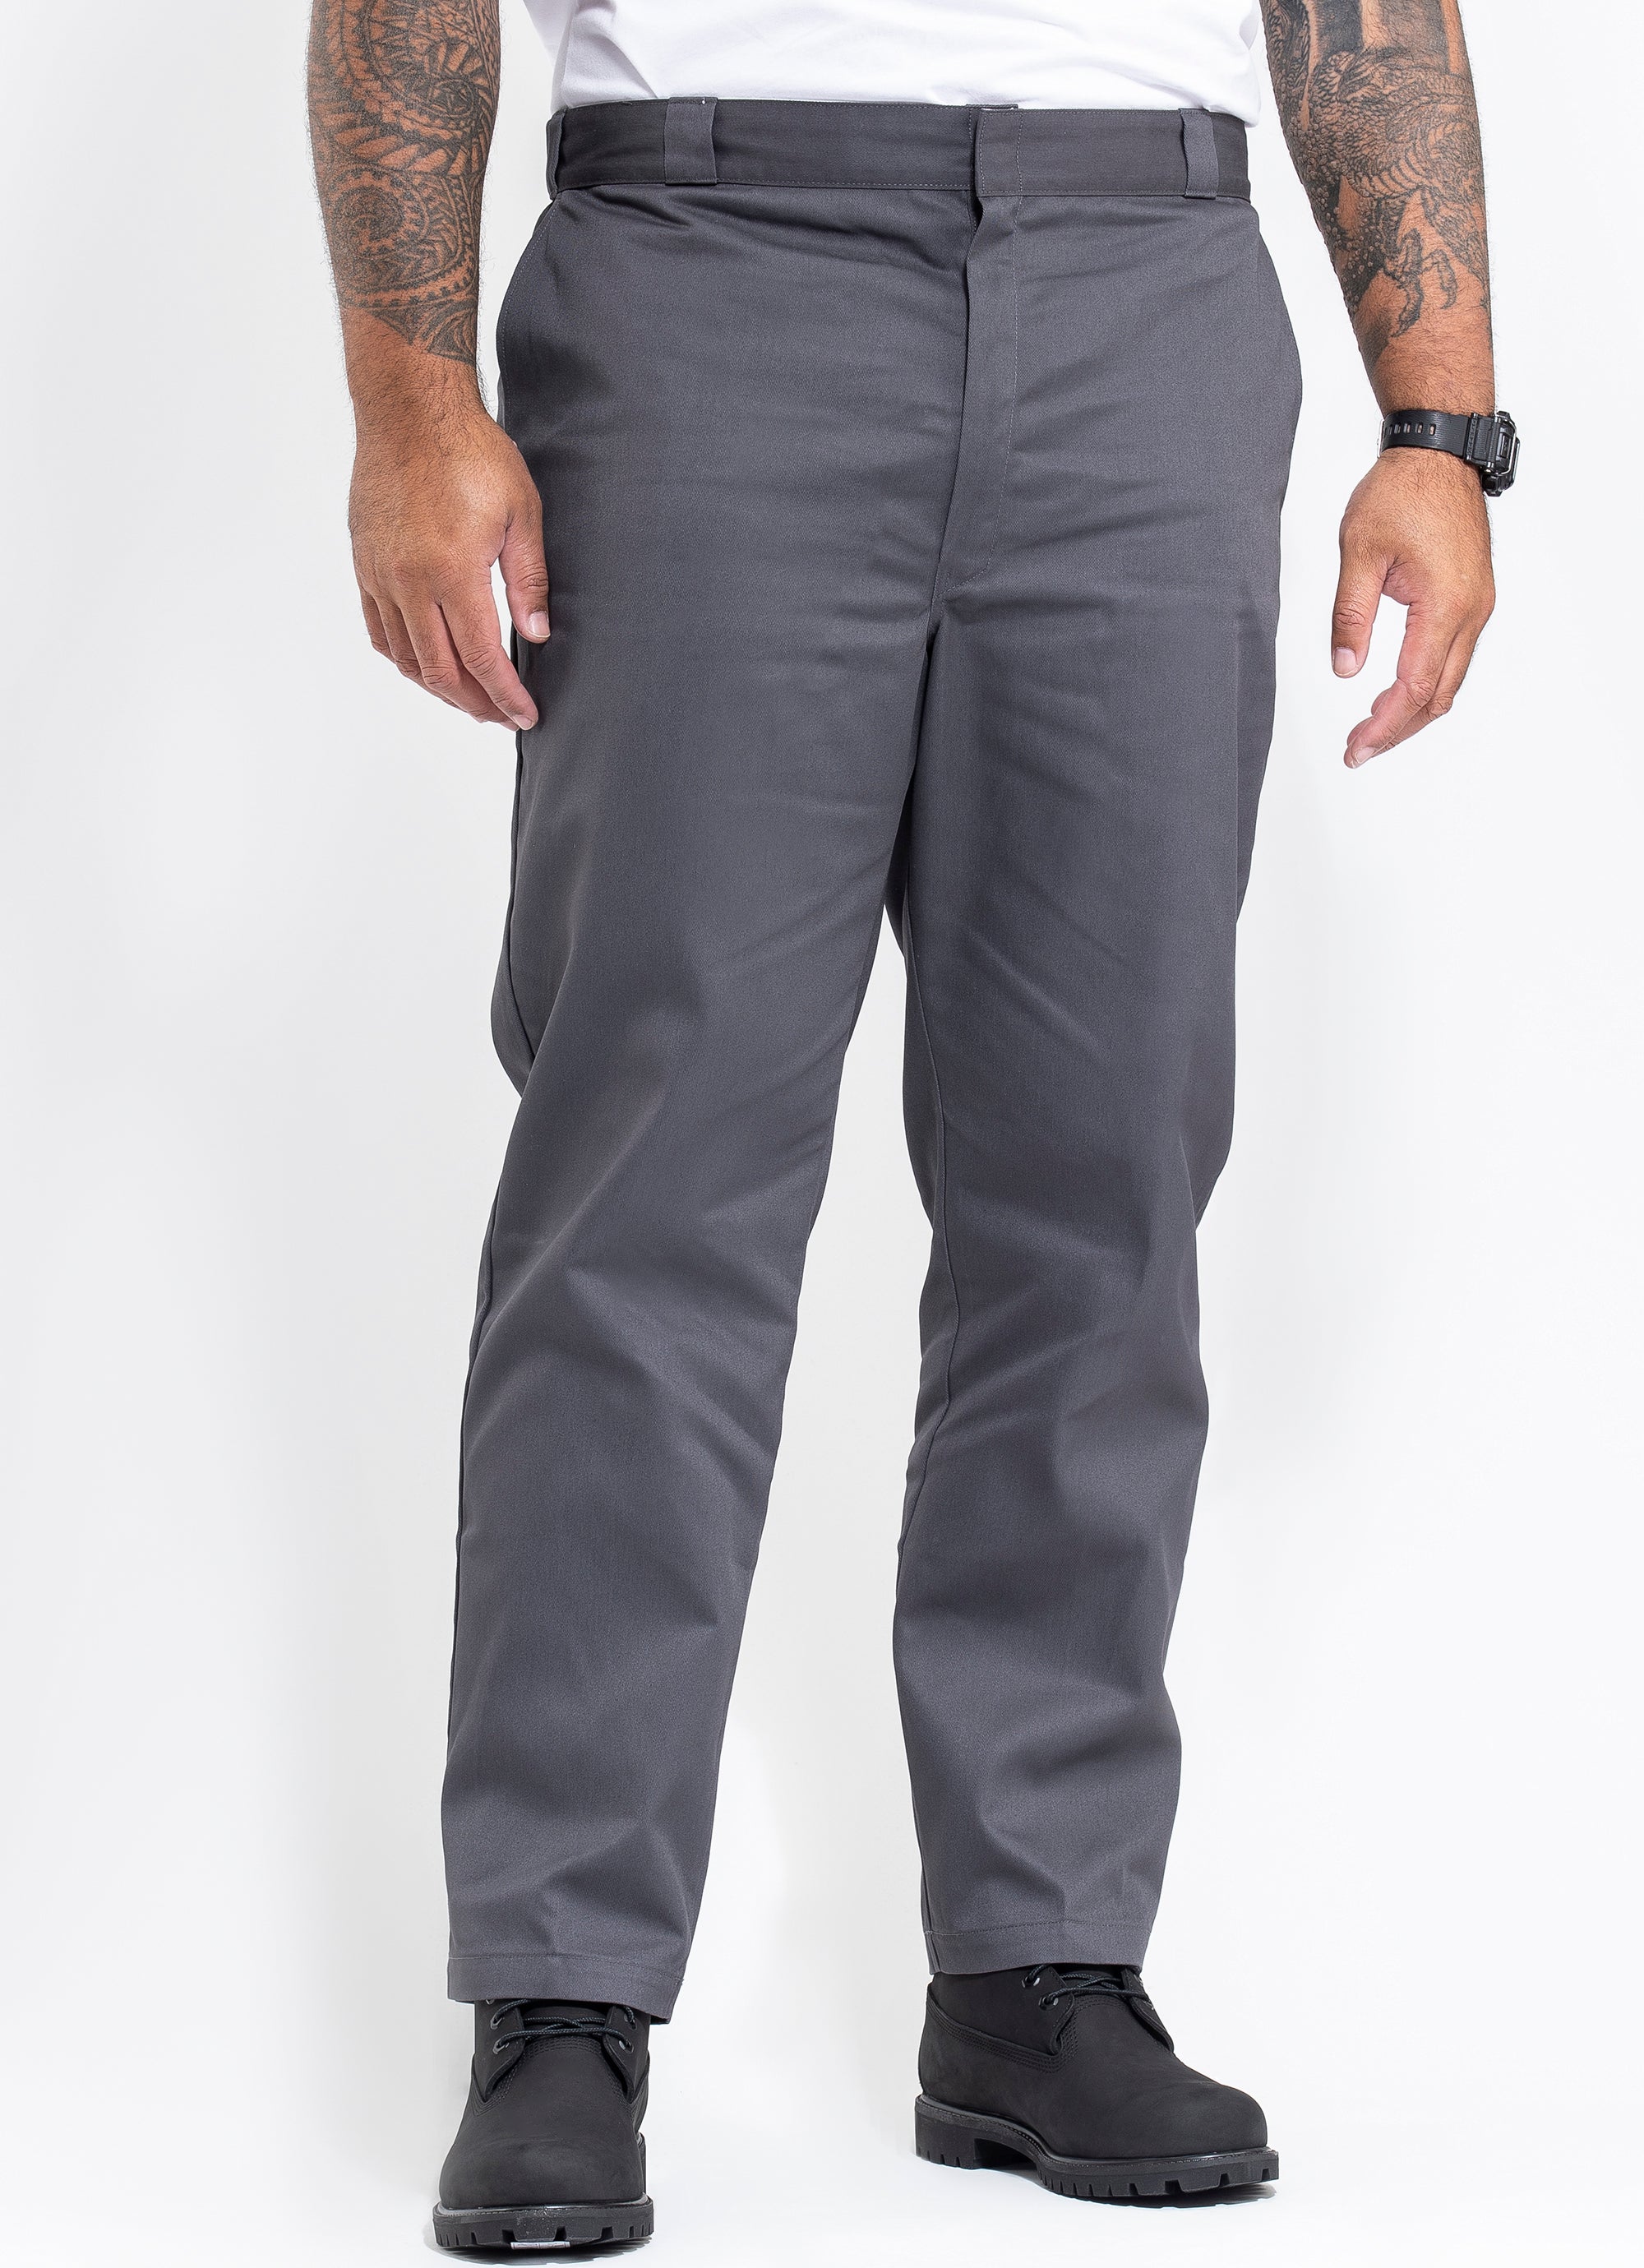 Dickies Original Fit Pants - Big & Tall in Grey | Red Rat